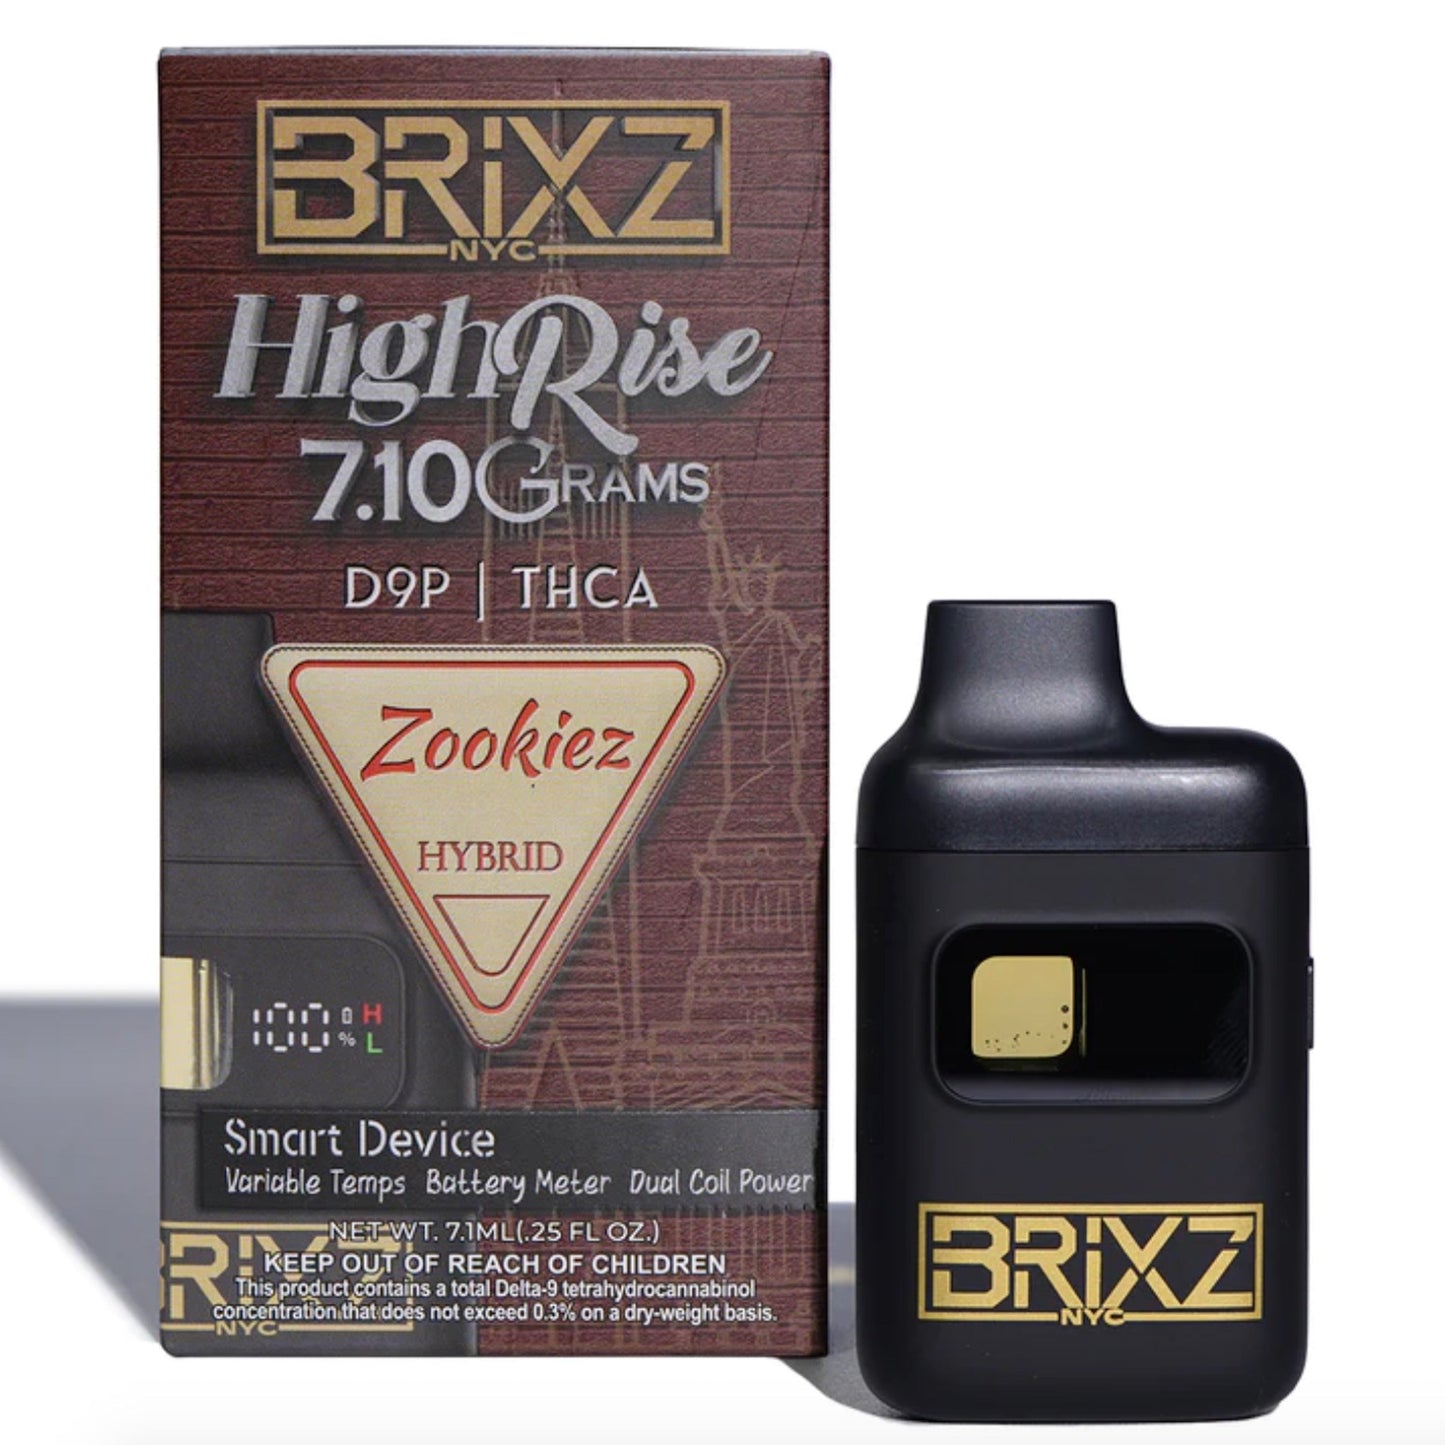 Dazed Brixs Highrise THC-A Vaporizer - 7.1g